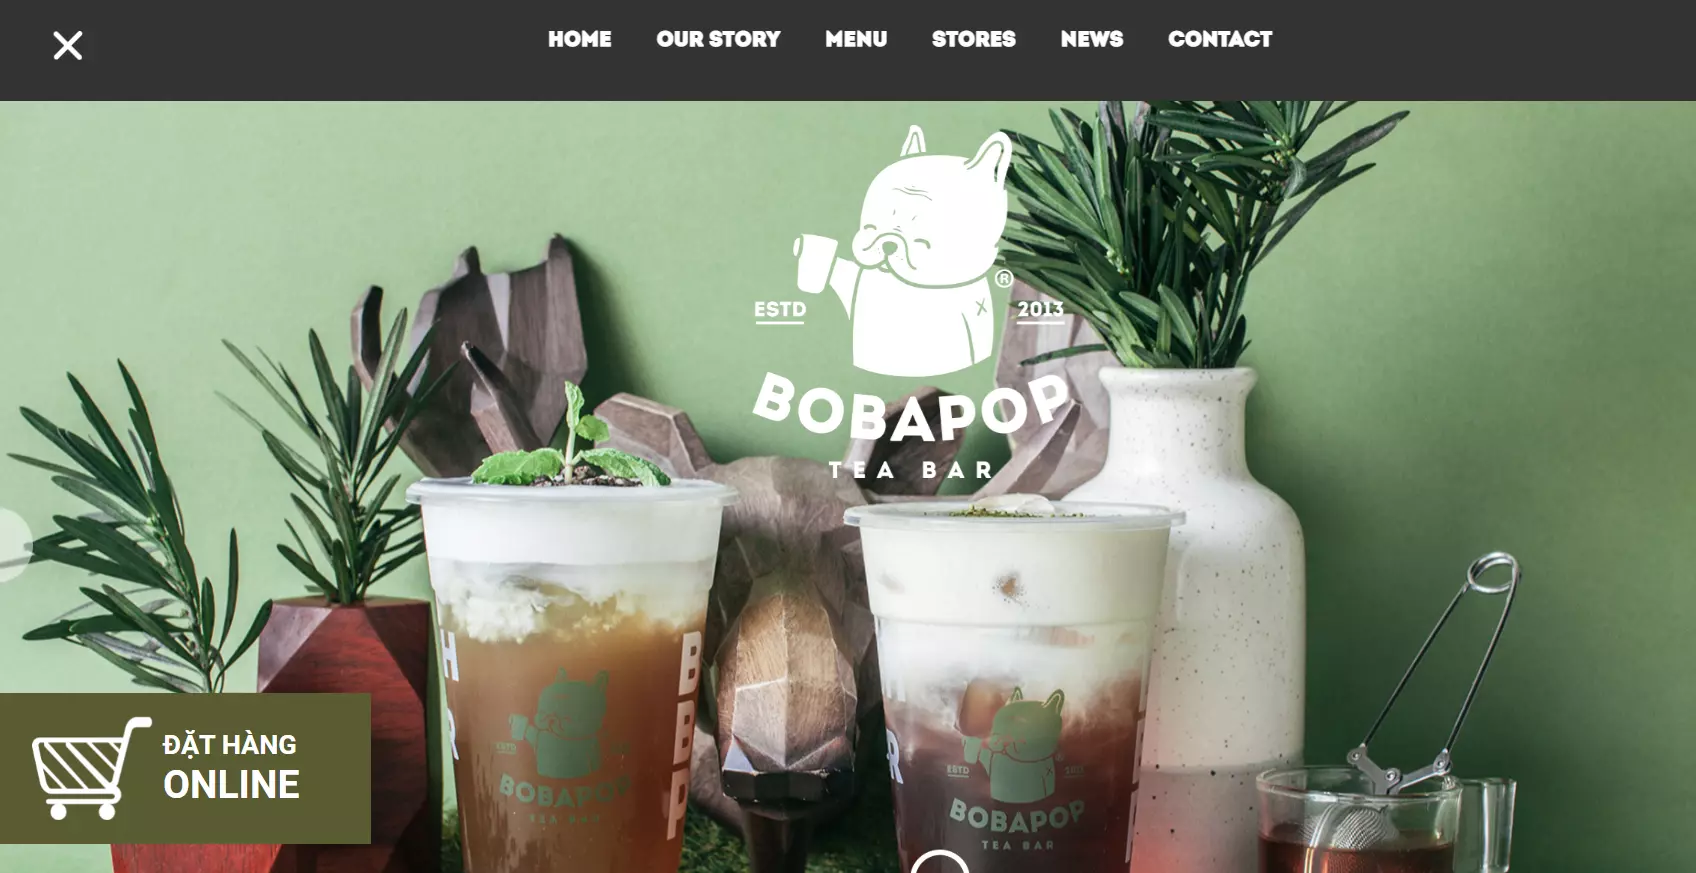 bobapop website 